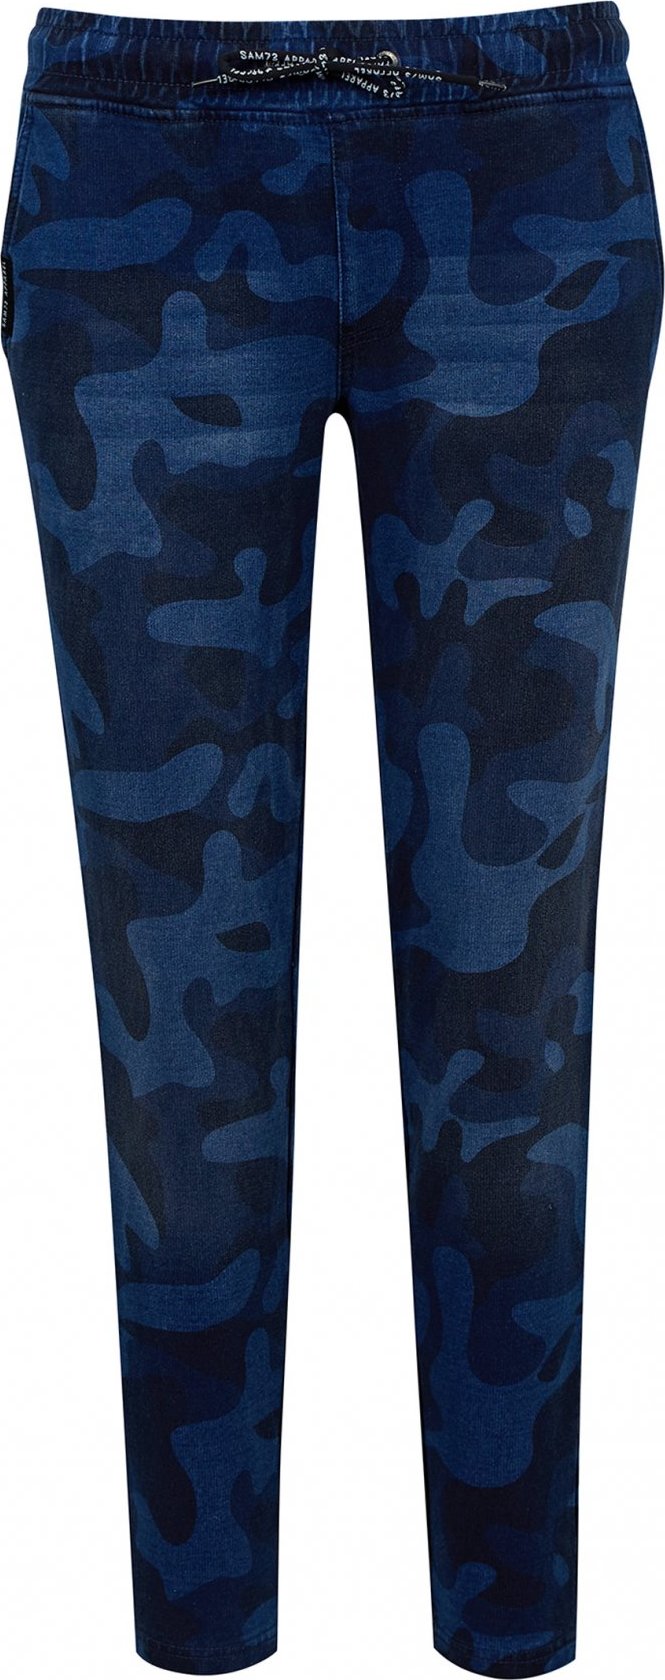 Dámské kalhoty SAM 73 Ivy modré Velikost: XS